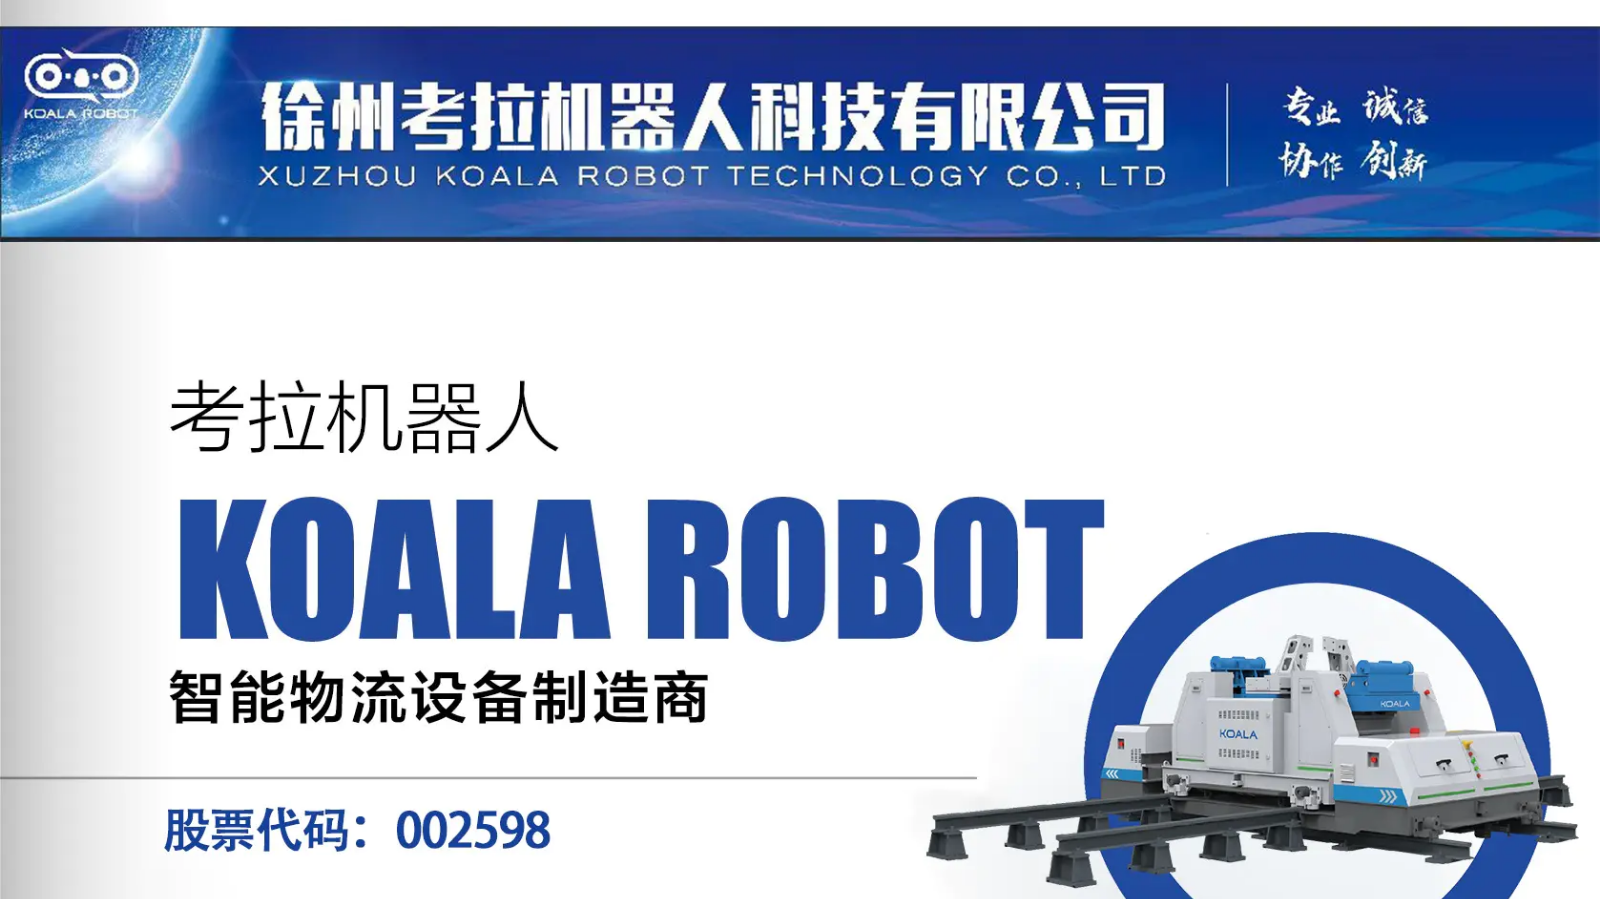 徐州考拉机器人科技有限公司介绍